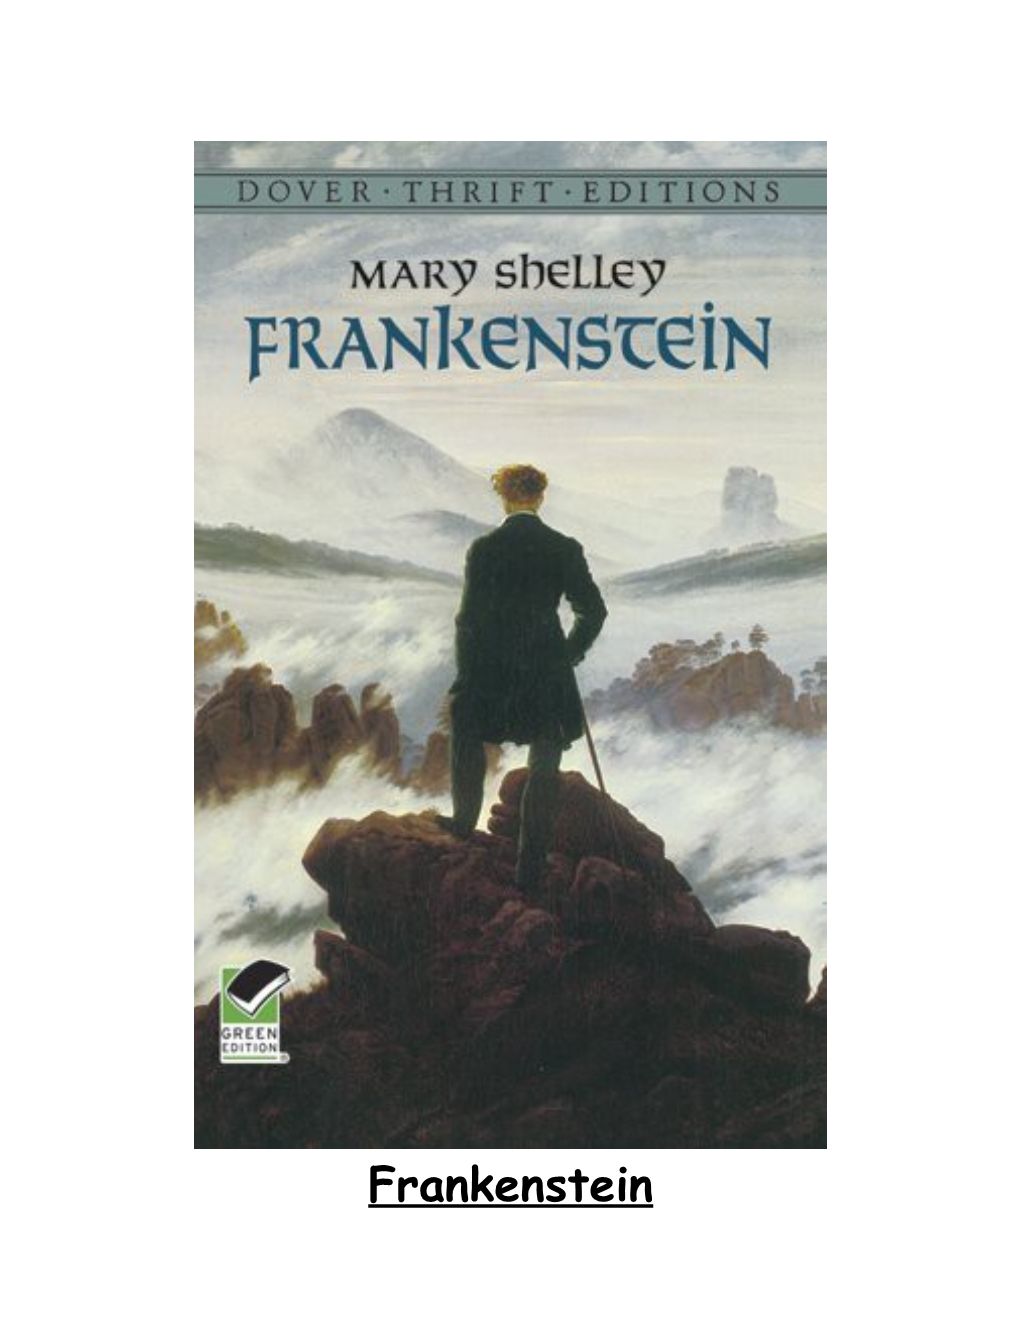 Full Title: Frankenstein Or the Modern Prometheus